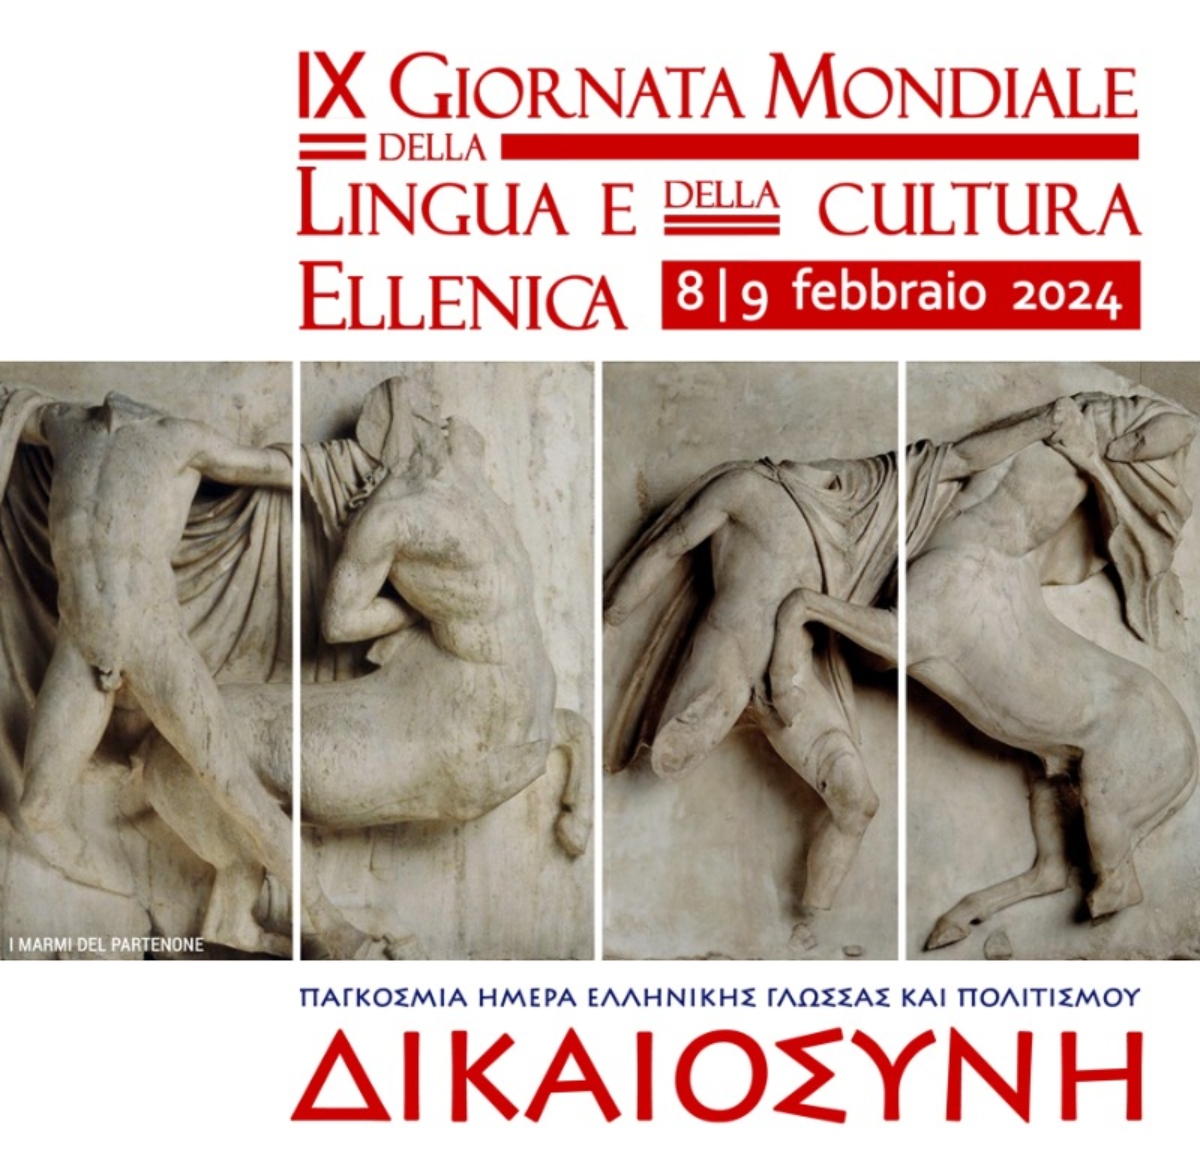 Ο εορτασμός της Παγκόσμιας Ημέρας Ελληνικής Γλώσσας στη Νάπολη